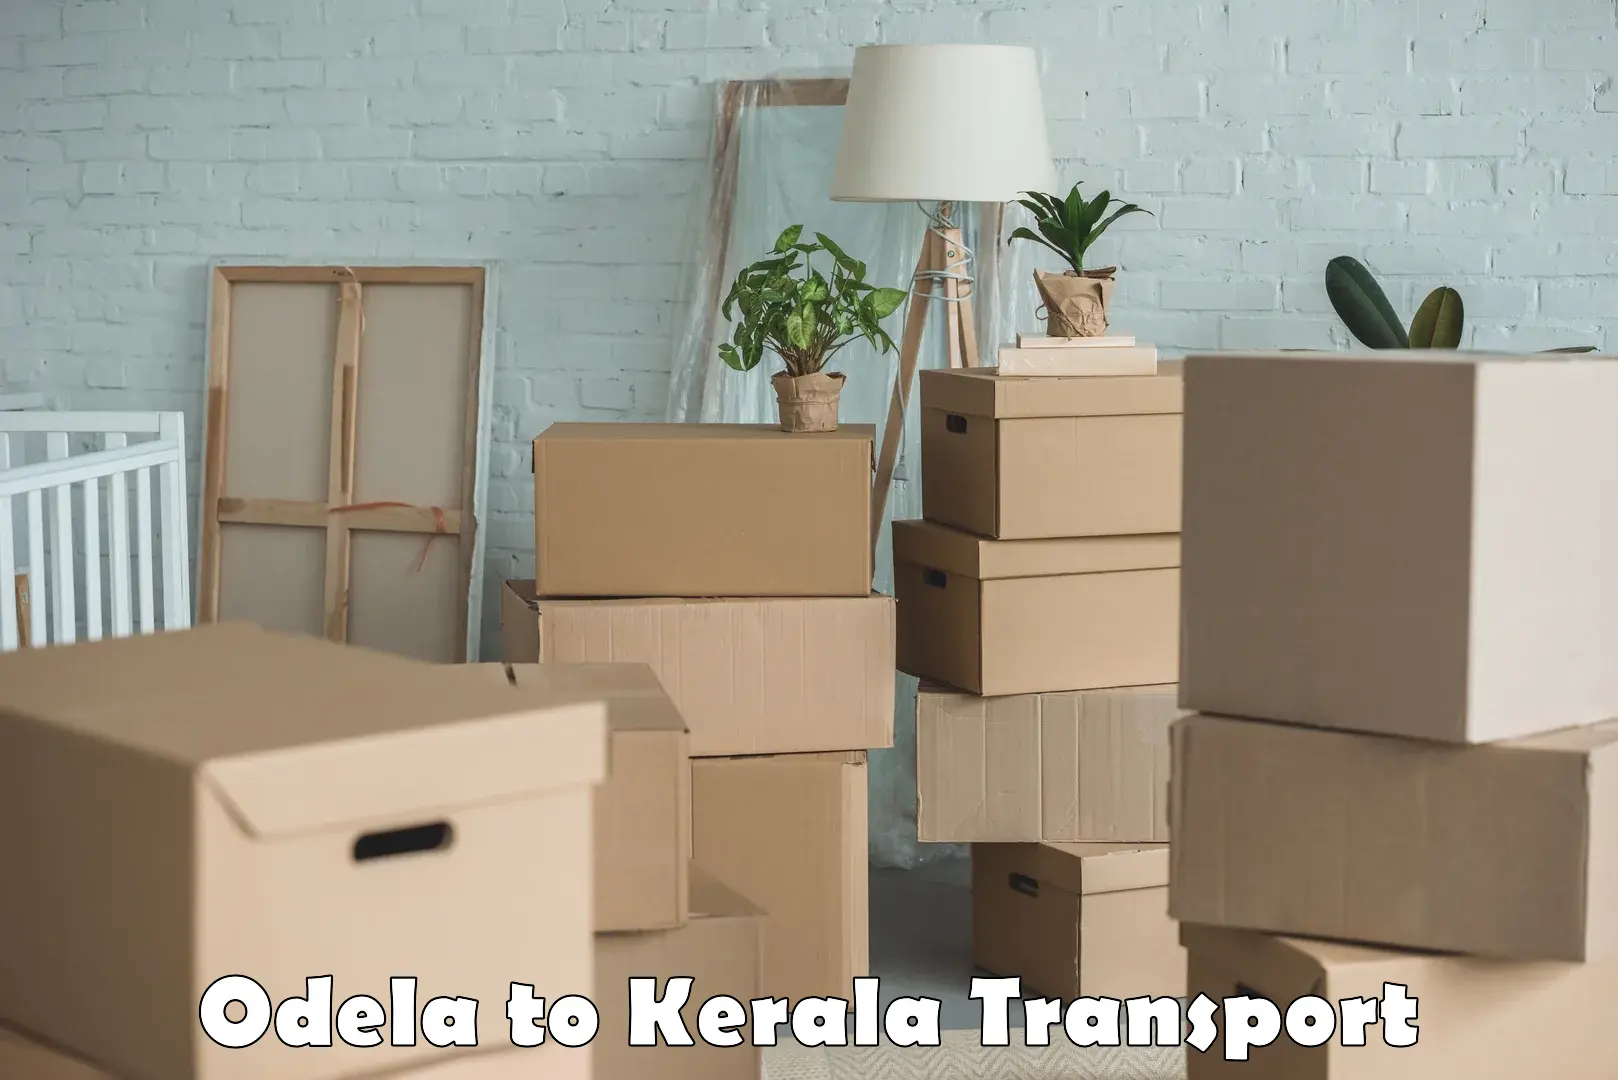 Commercial transport service Odela to Kannur